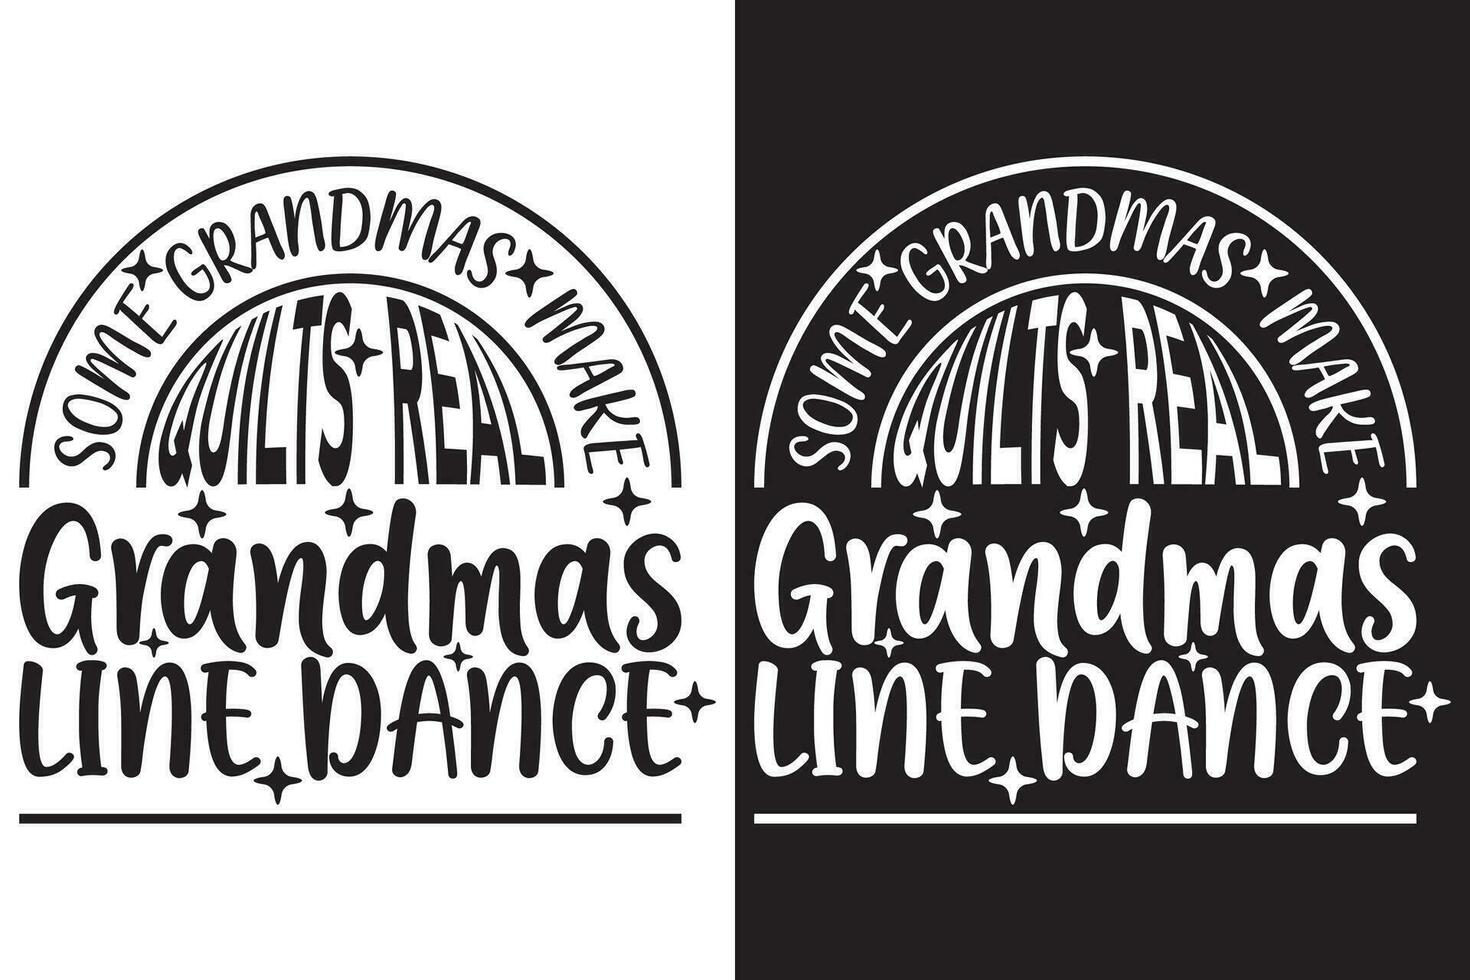 några mormor göra täcken verklig mormor linje dansa - dans eps typografi t-shirt design vektor